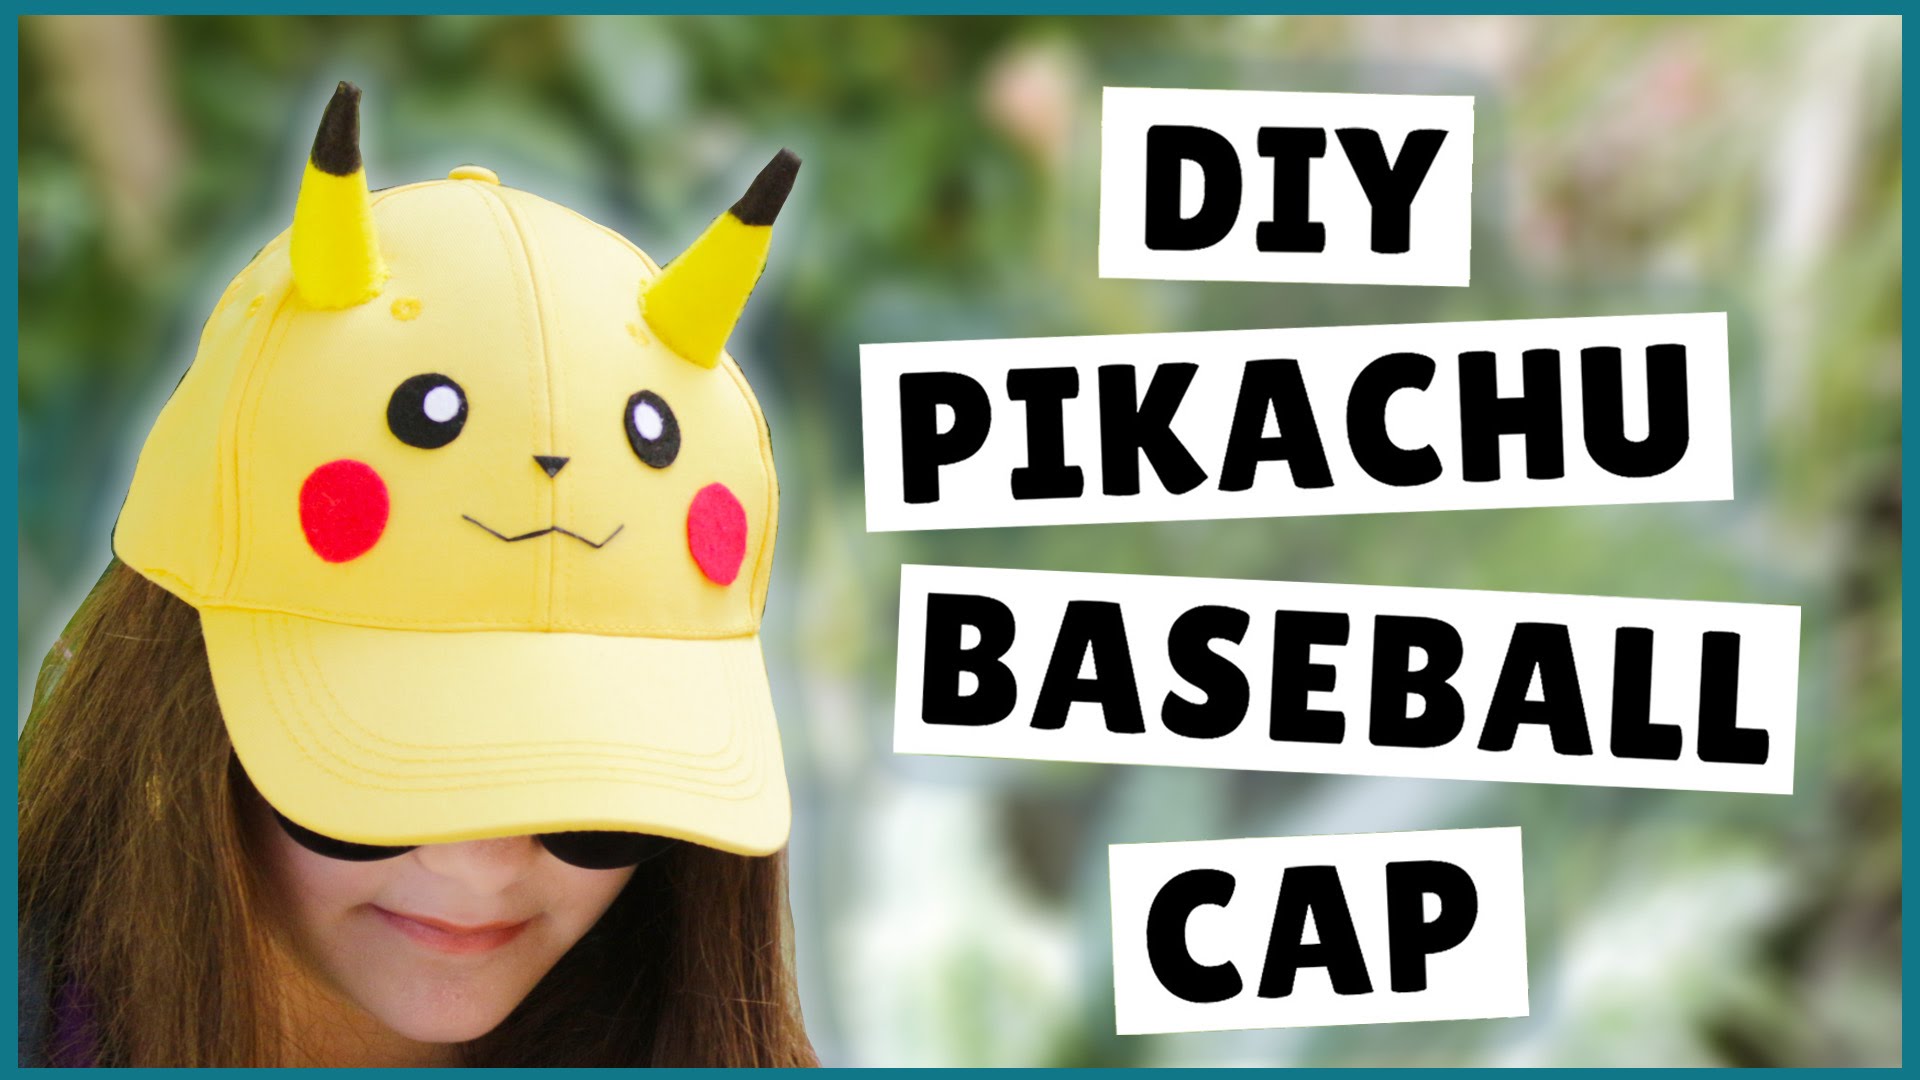 Diy pikachu baseball cap